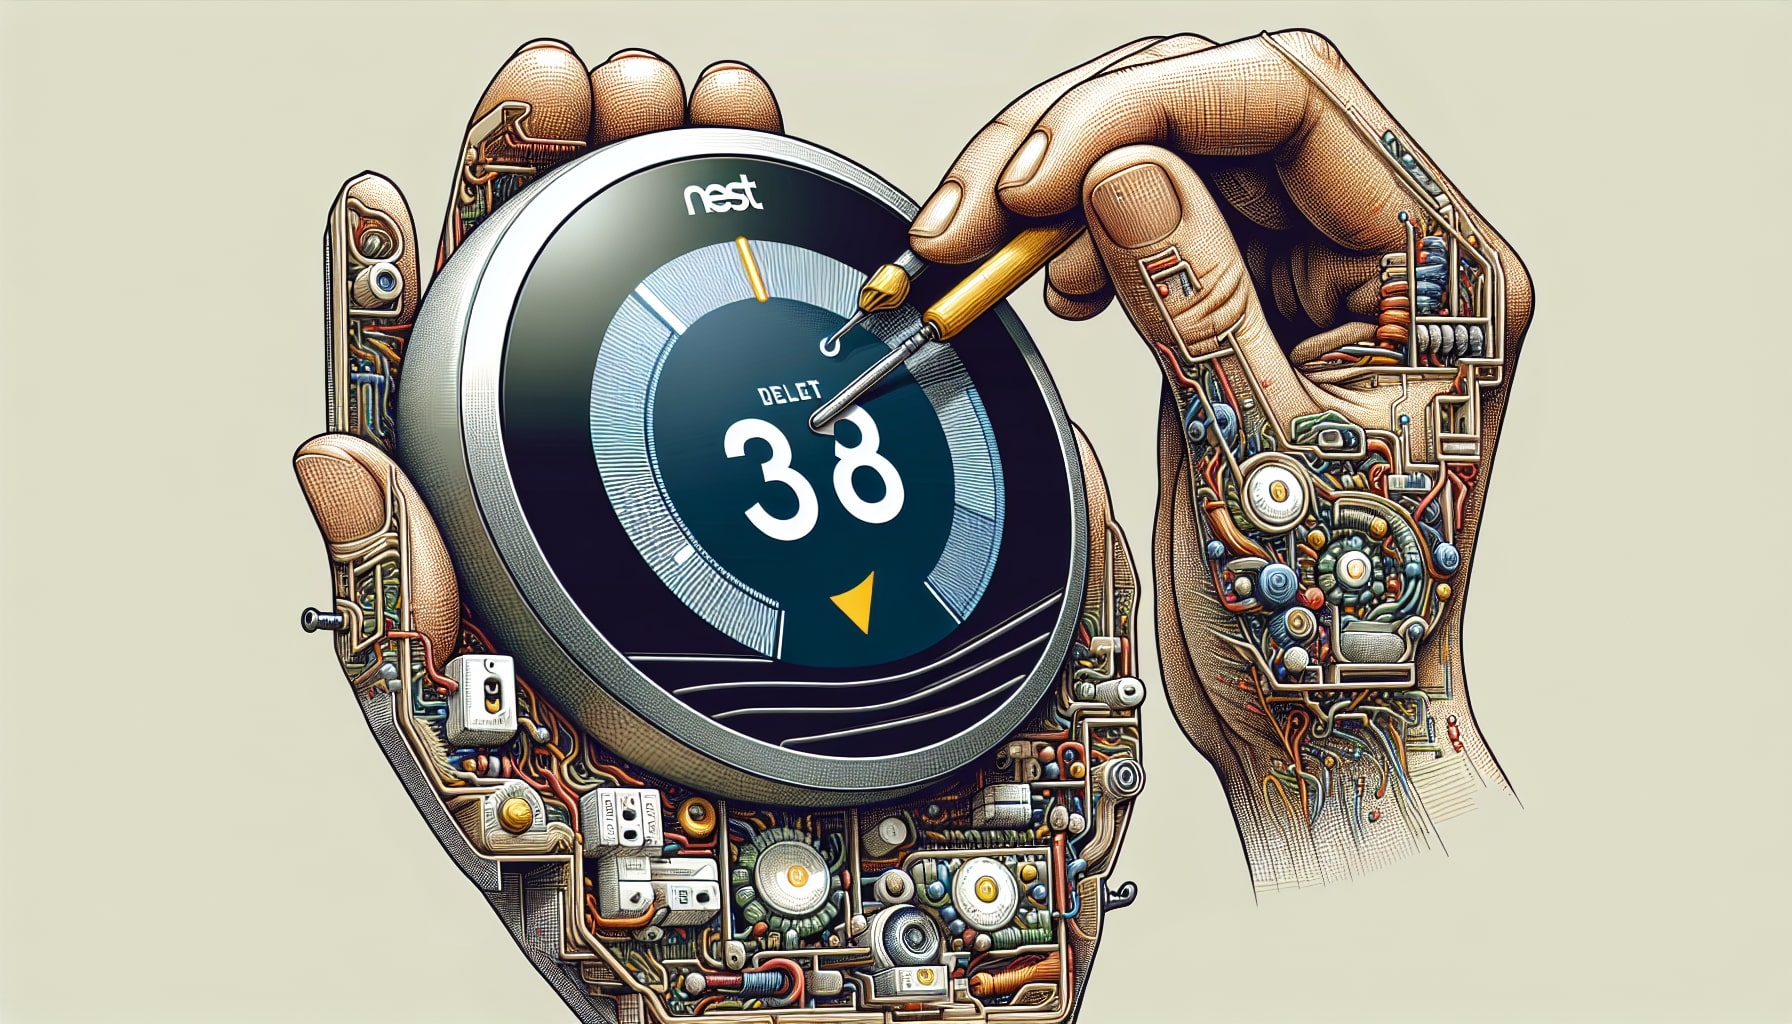 Illustration of robotic hands adjusting a smart thermostat.